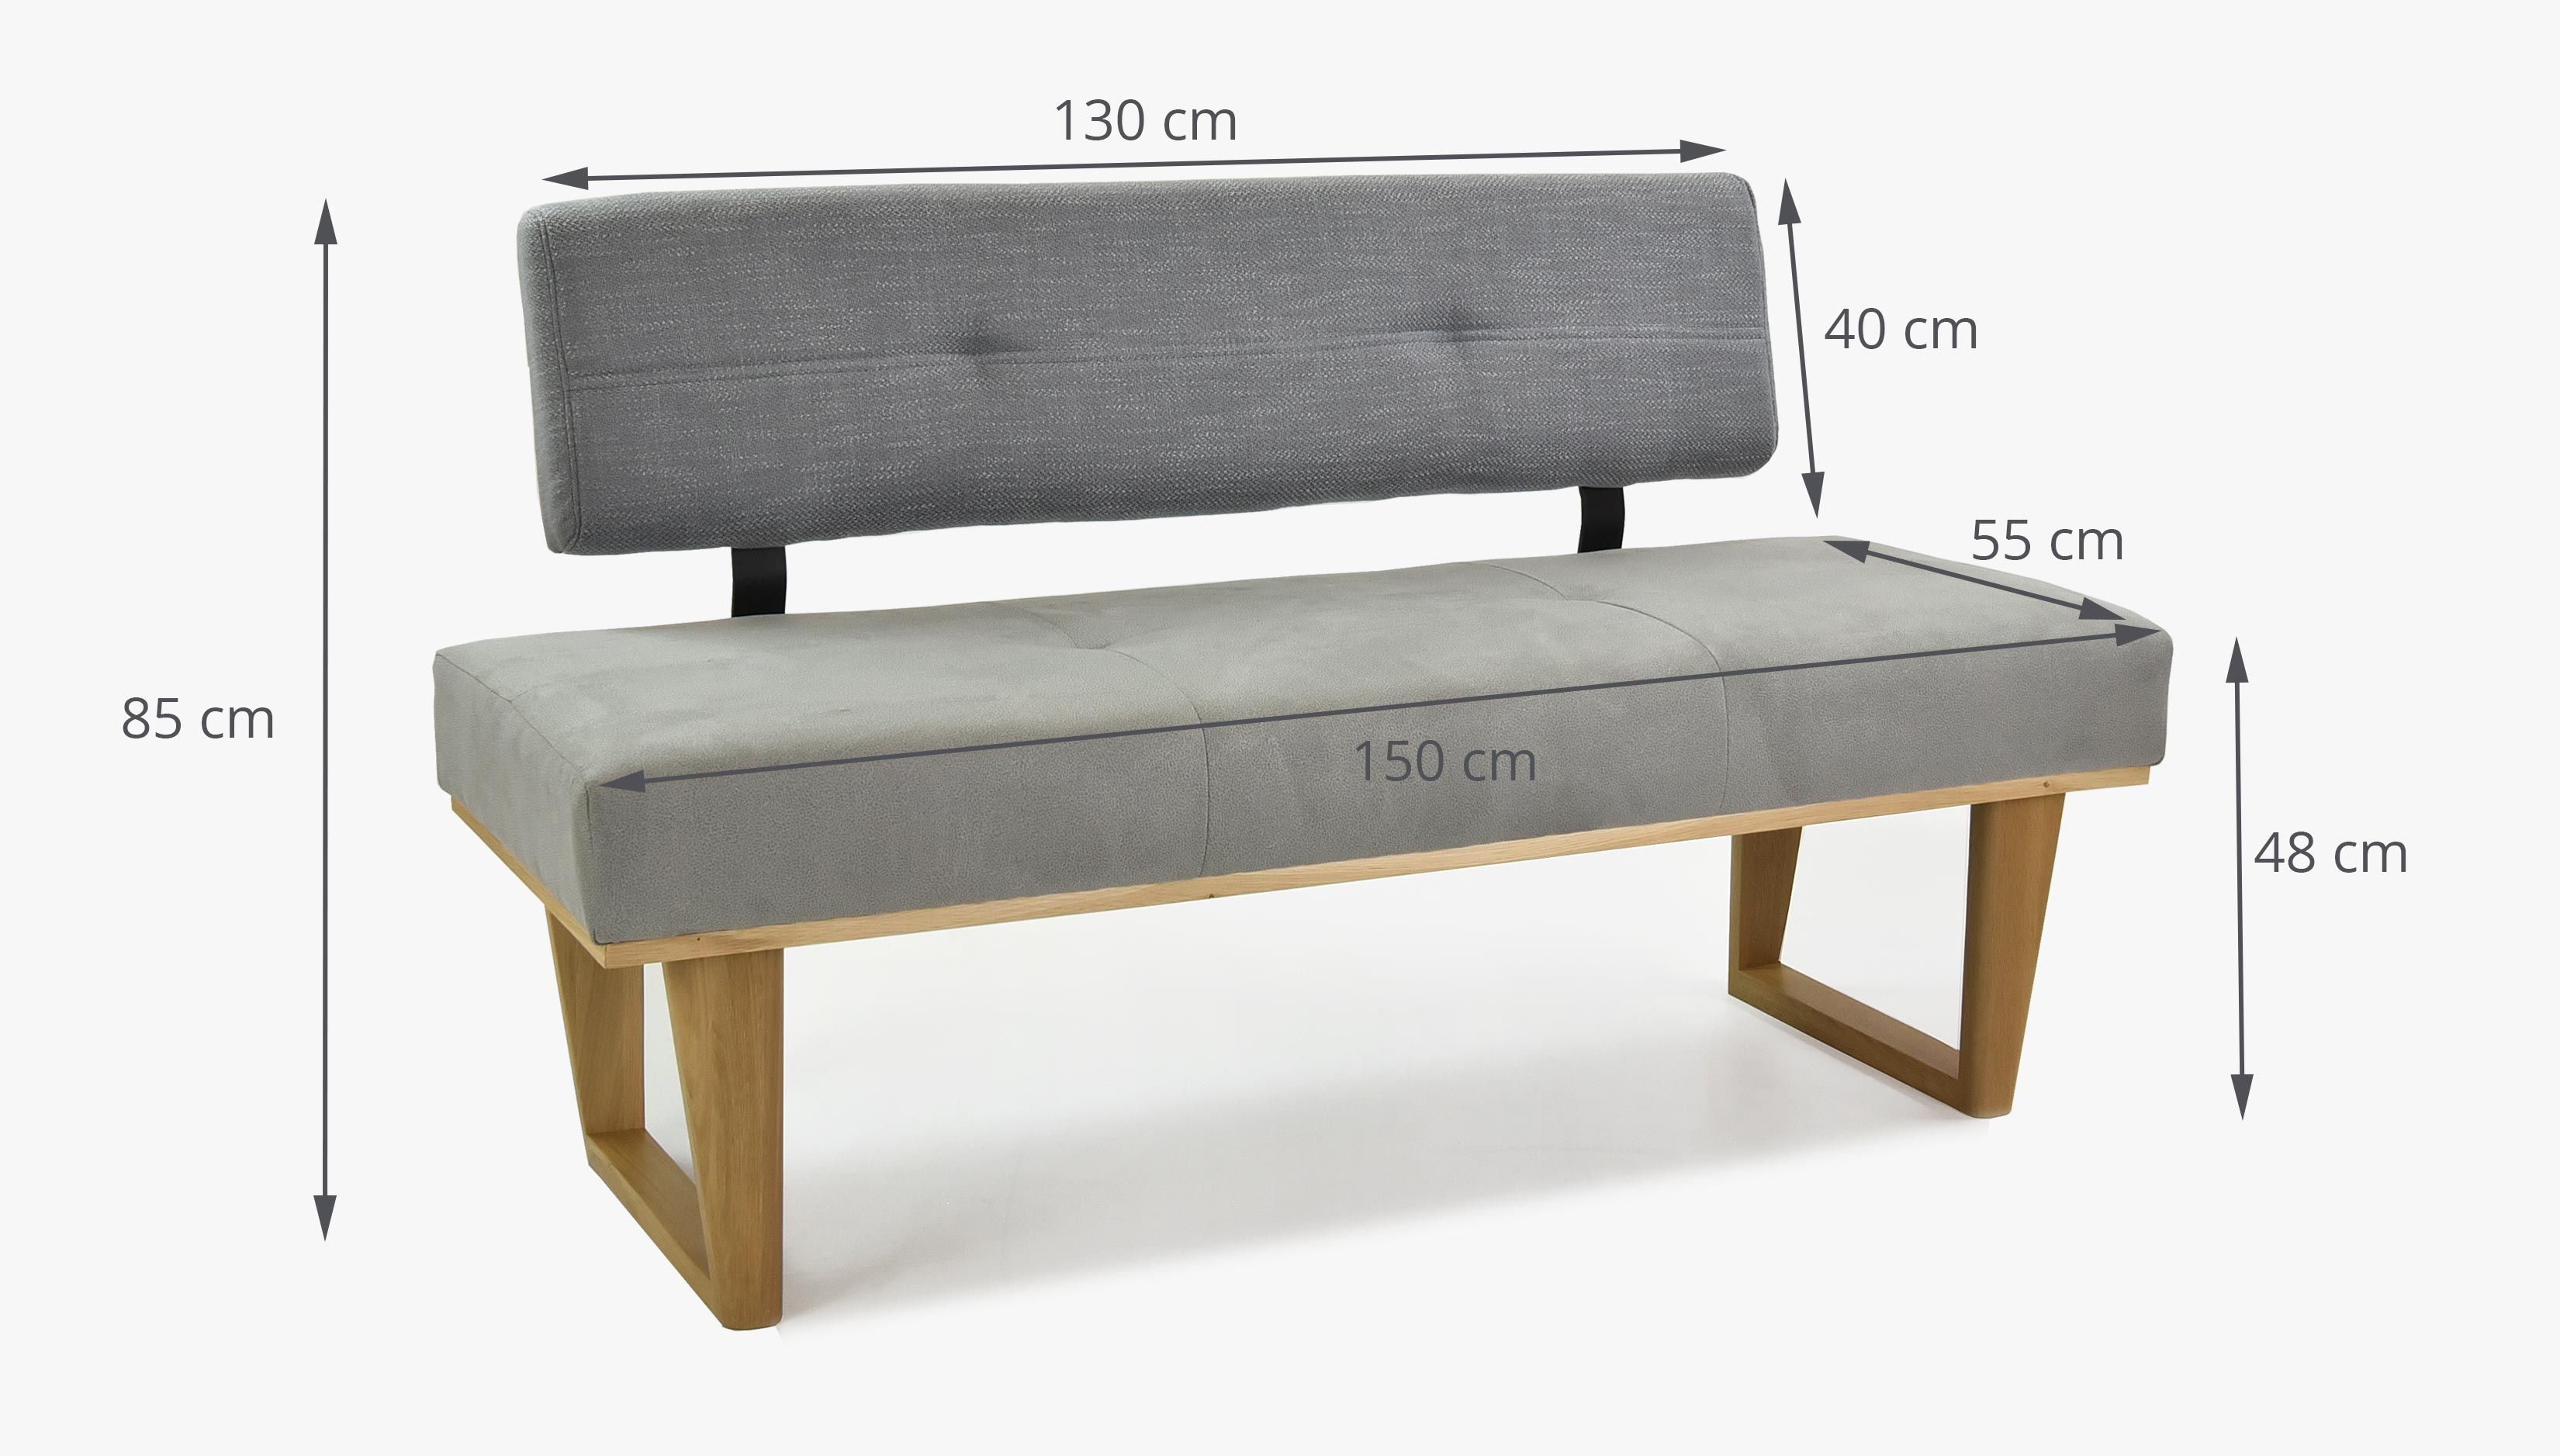 Moderní lavice do jídelny šedá 150 cm dlouhá - model Colmar